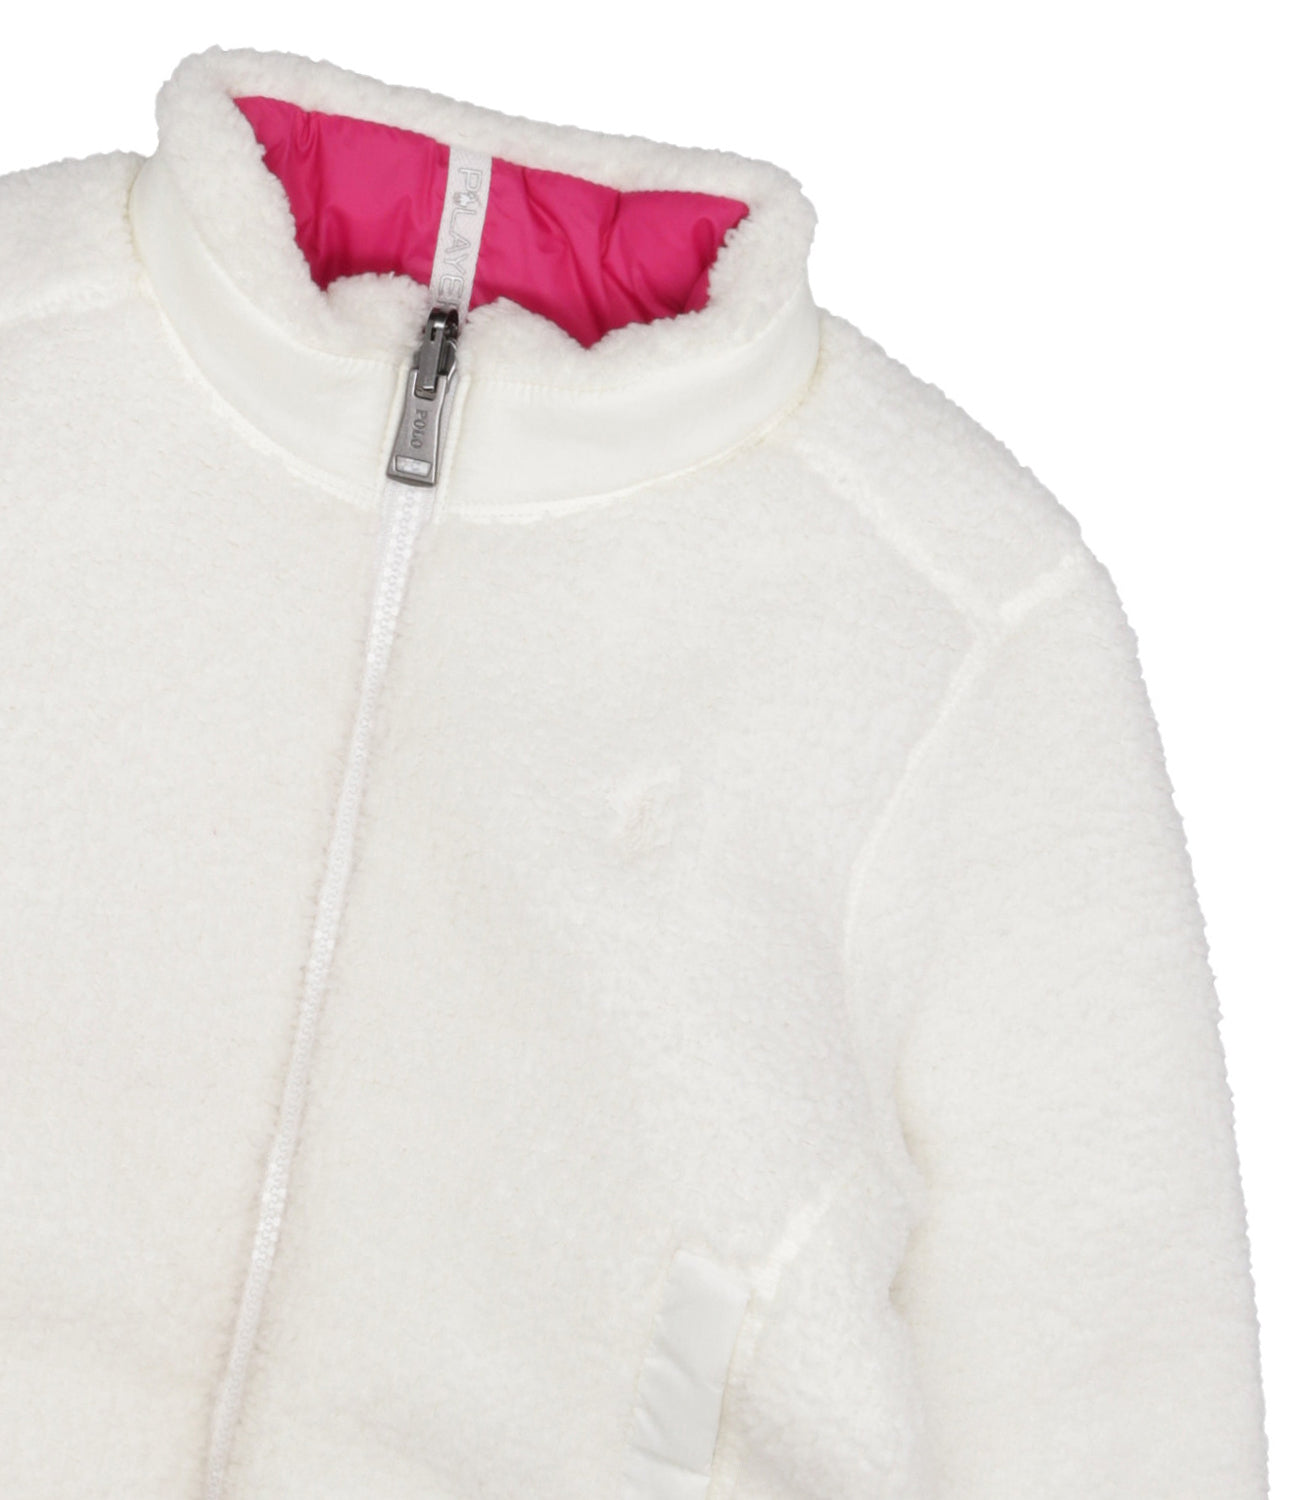 Ralph Lauren Childrenswear | Pink and White Jacket